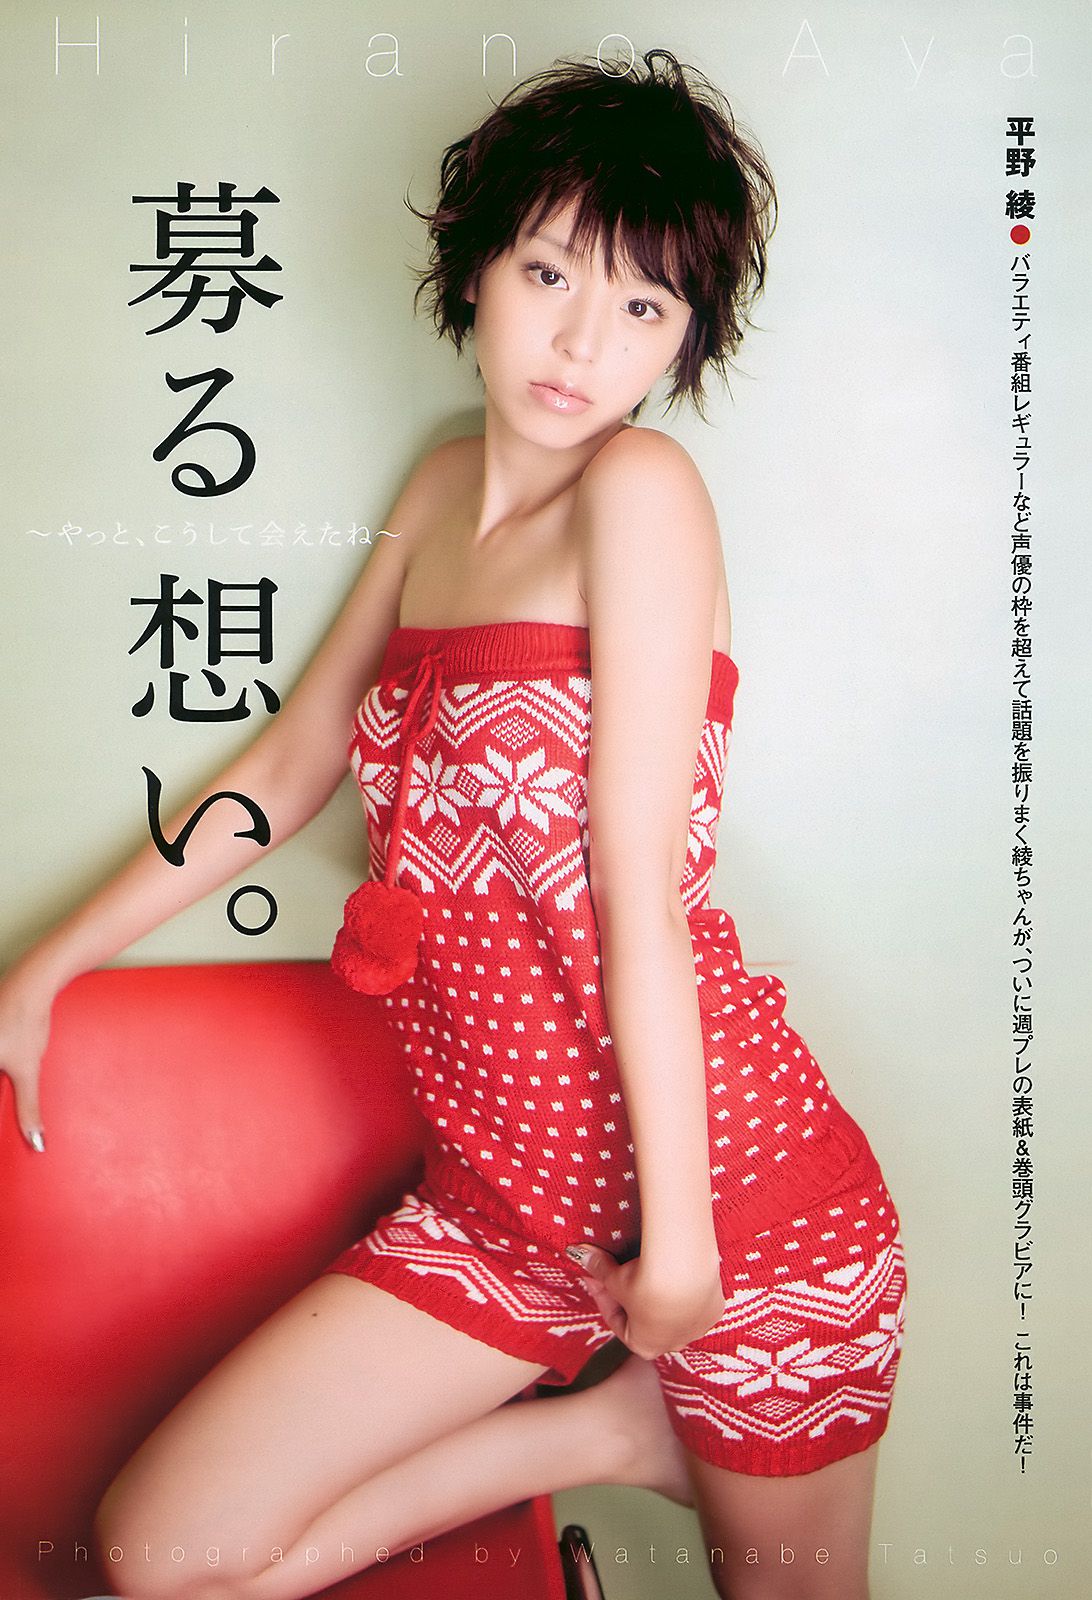 平野綾 AKB48 佐藤寛子 西田麻衣 森崎友紀 Agnes Lum [Weekly Playboy] 2010年No.51 寫真雜誌